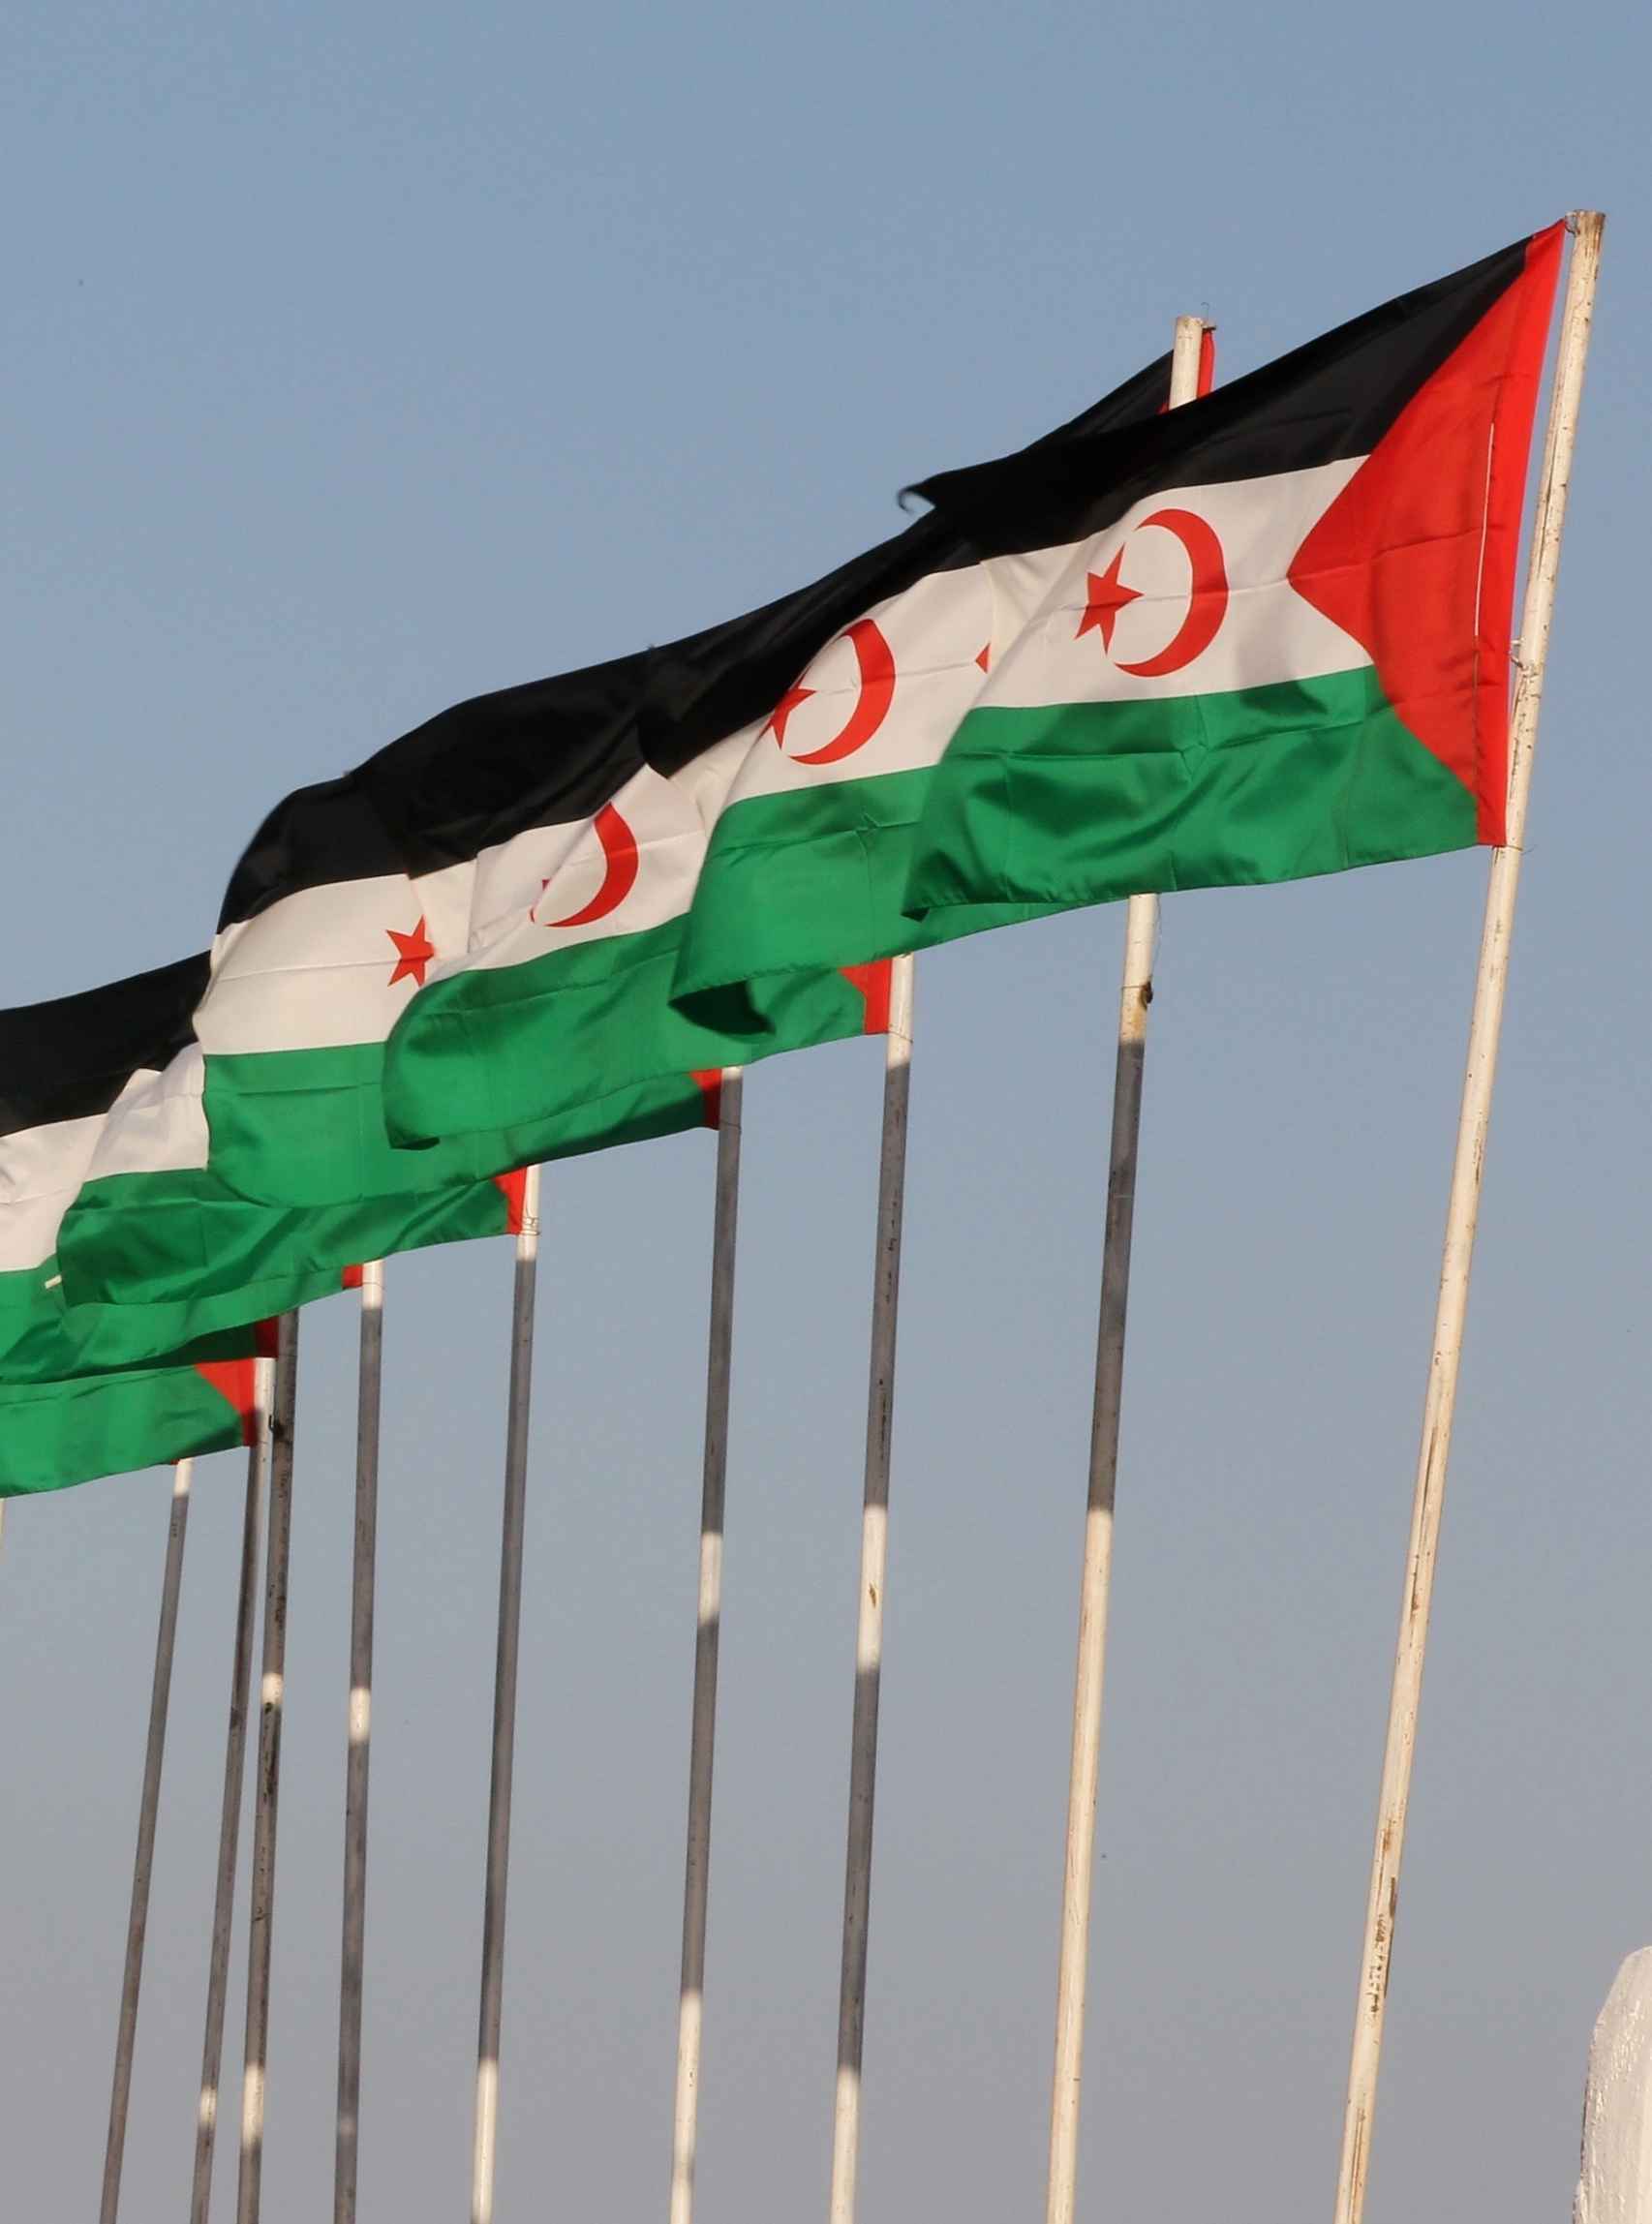 Banderas de la República Árabe Saharaui Democrática.